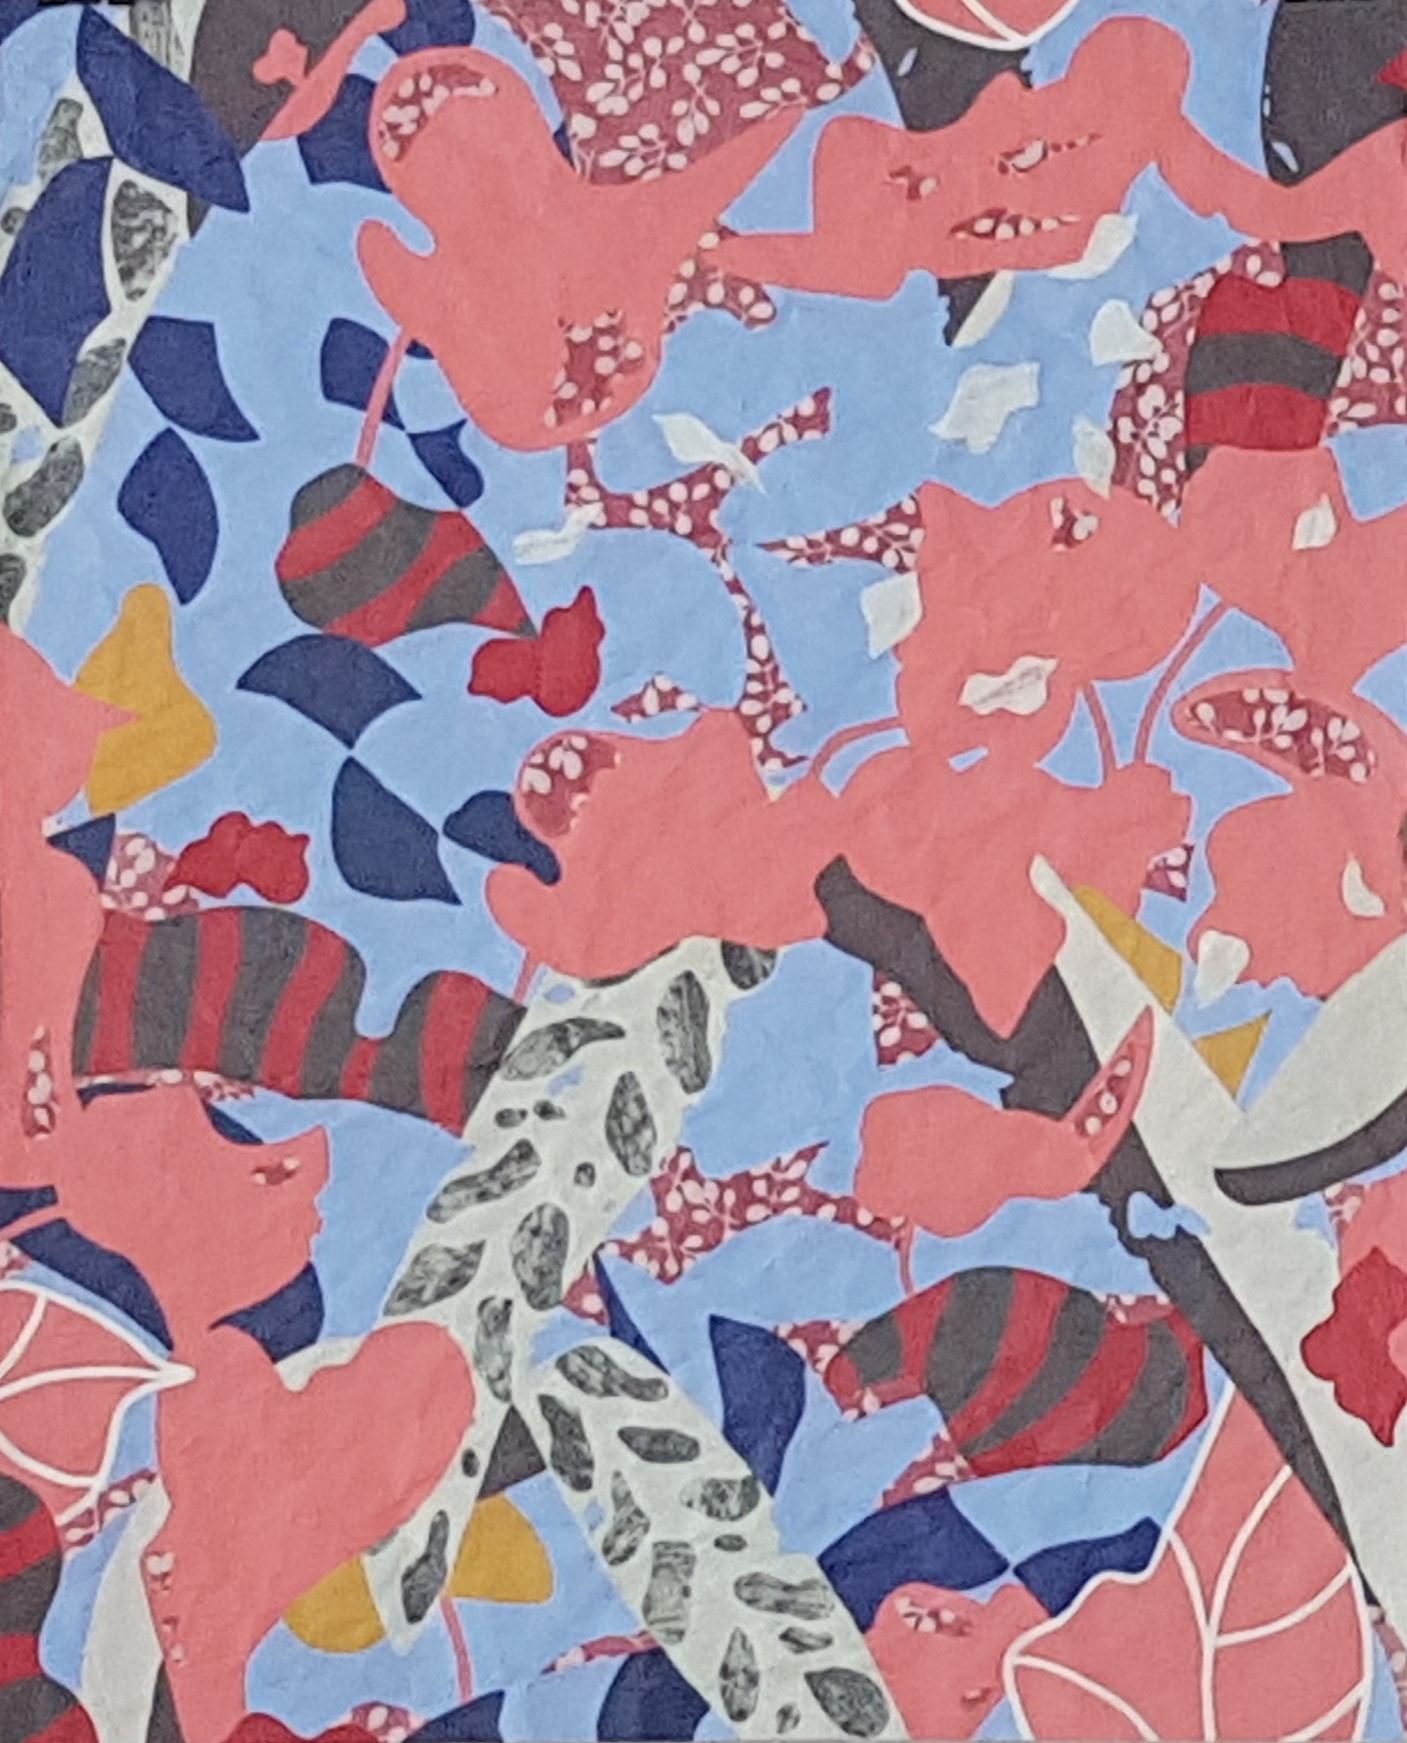 O.T., 2020, 50 x 62 cm, Mischtechnik auf Papier, Acryl, Collage